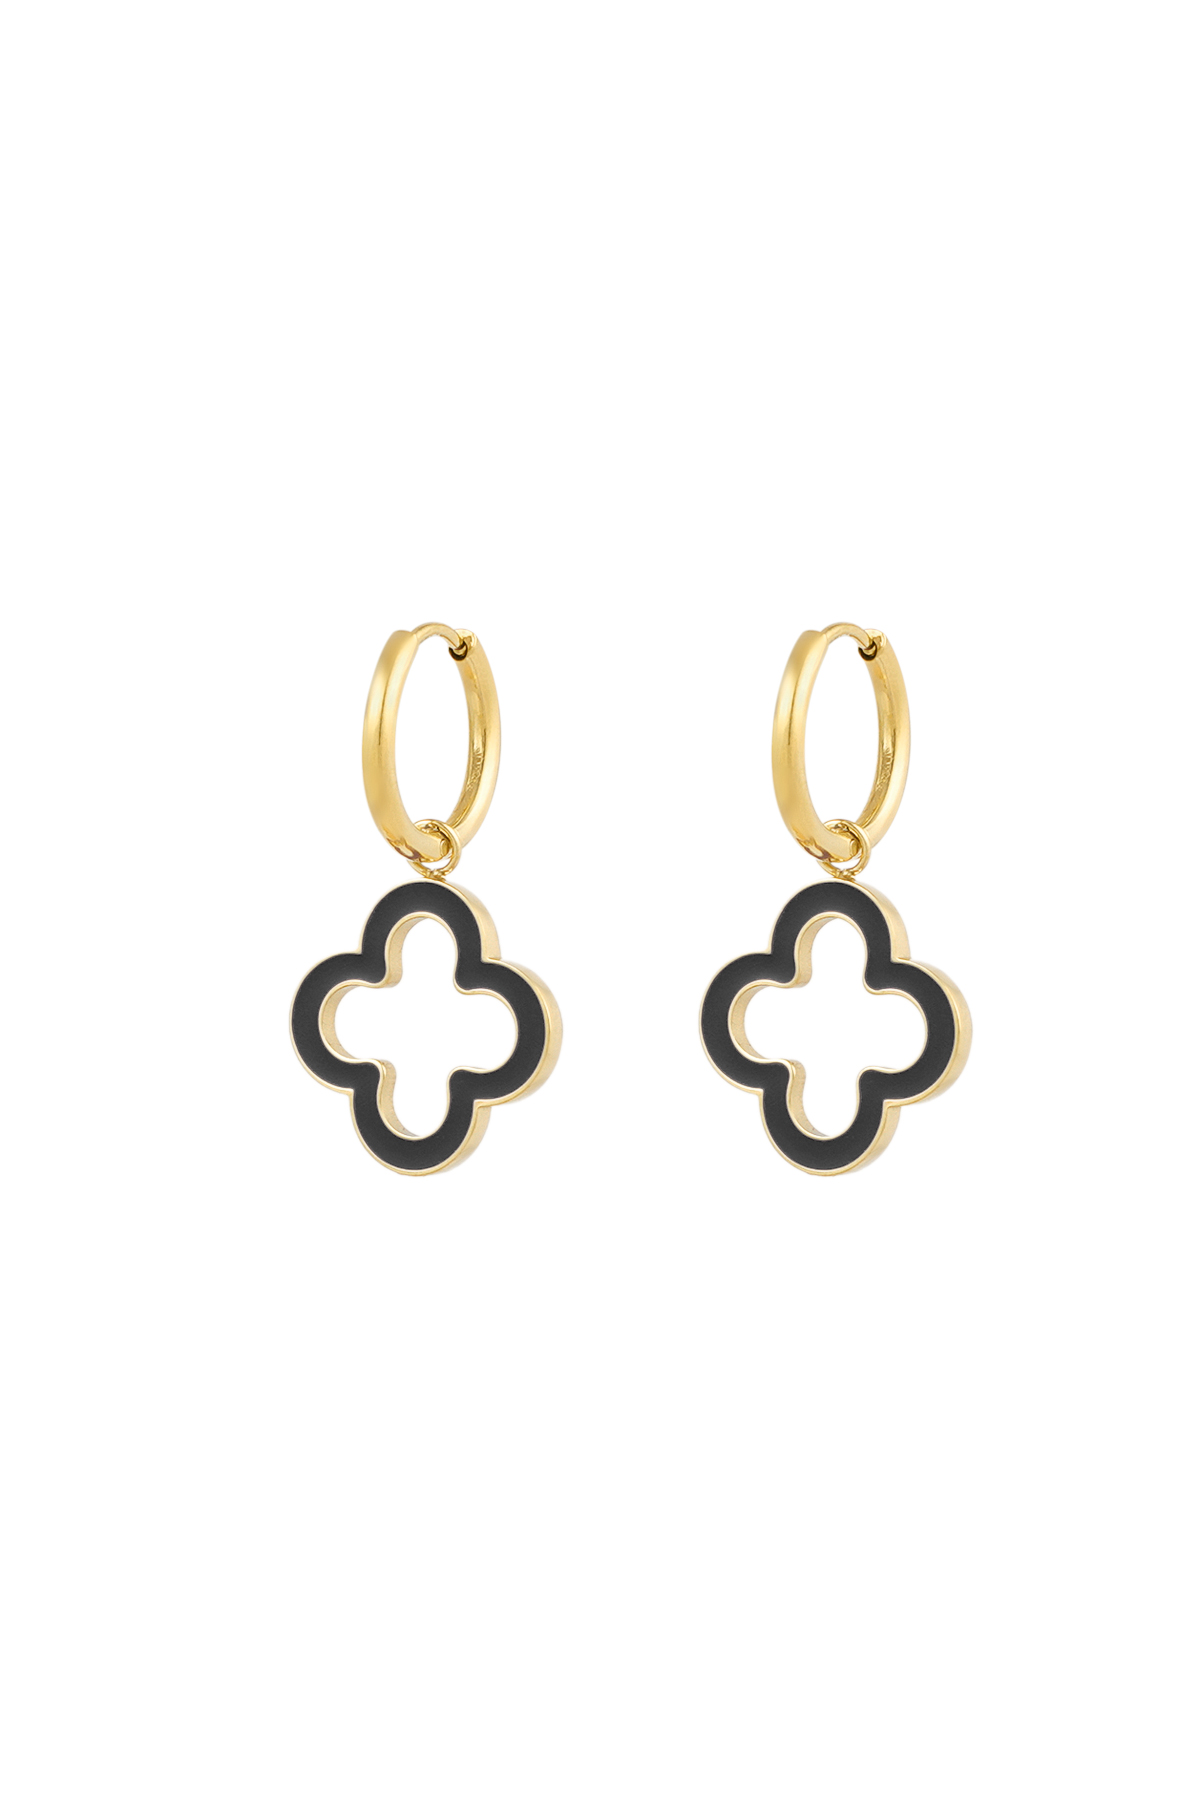 Earrings clover radiance - black gold h5 